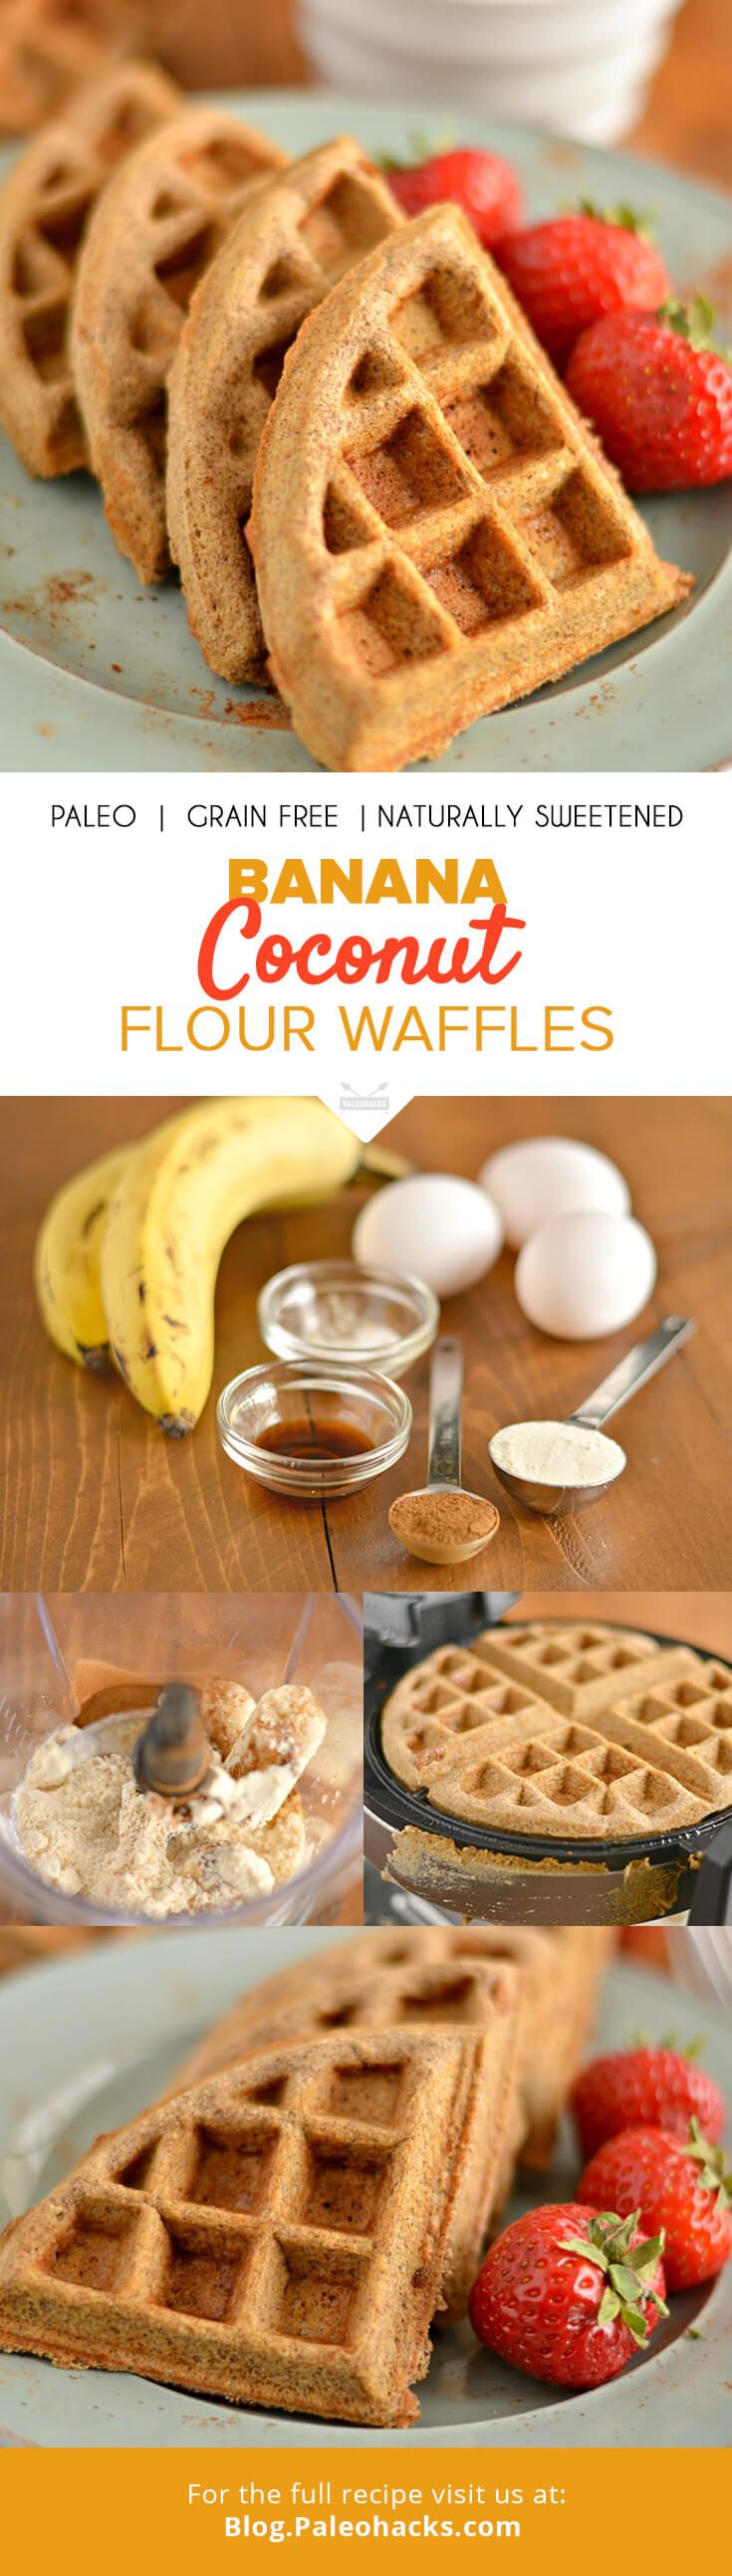 banana coconut flour waffles pin